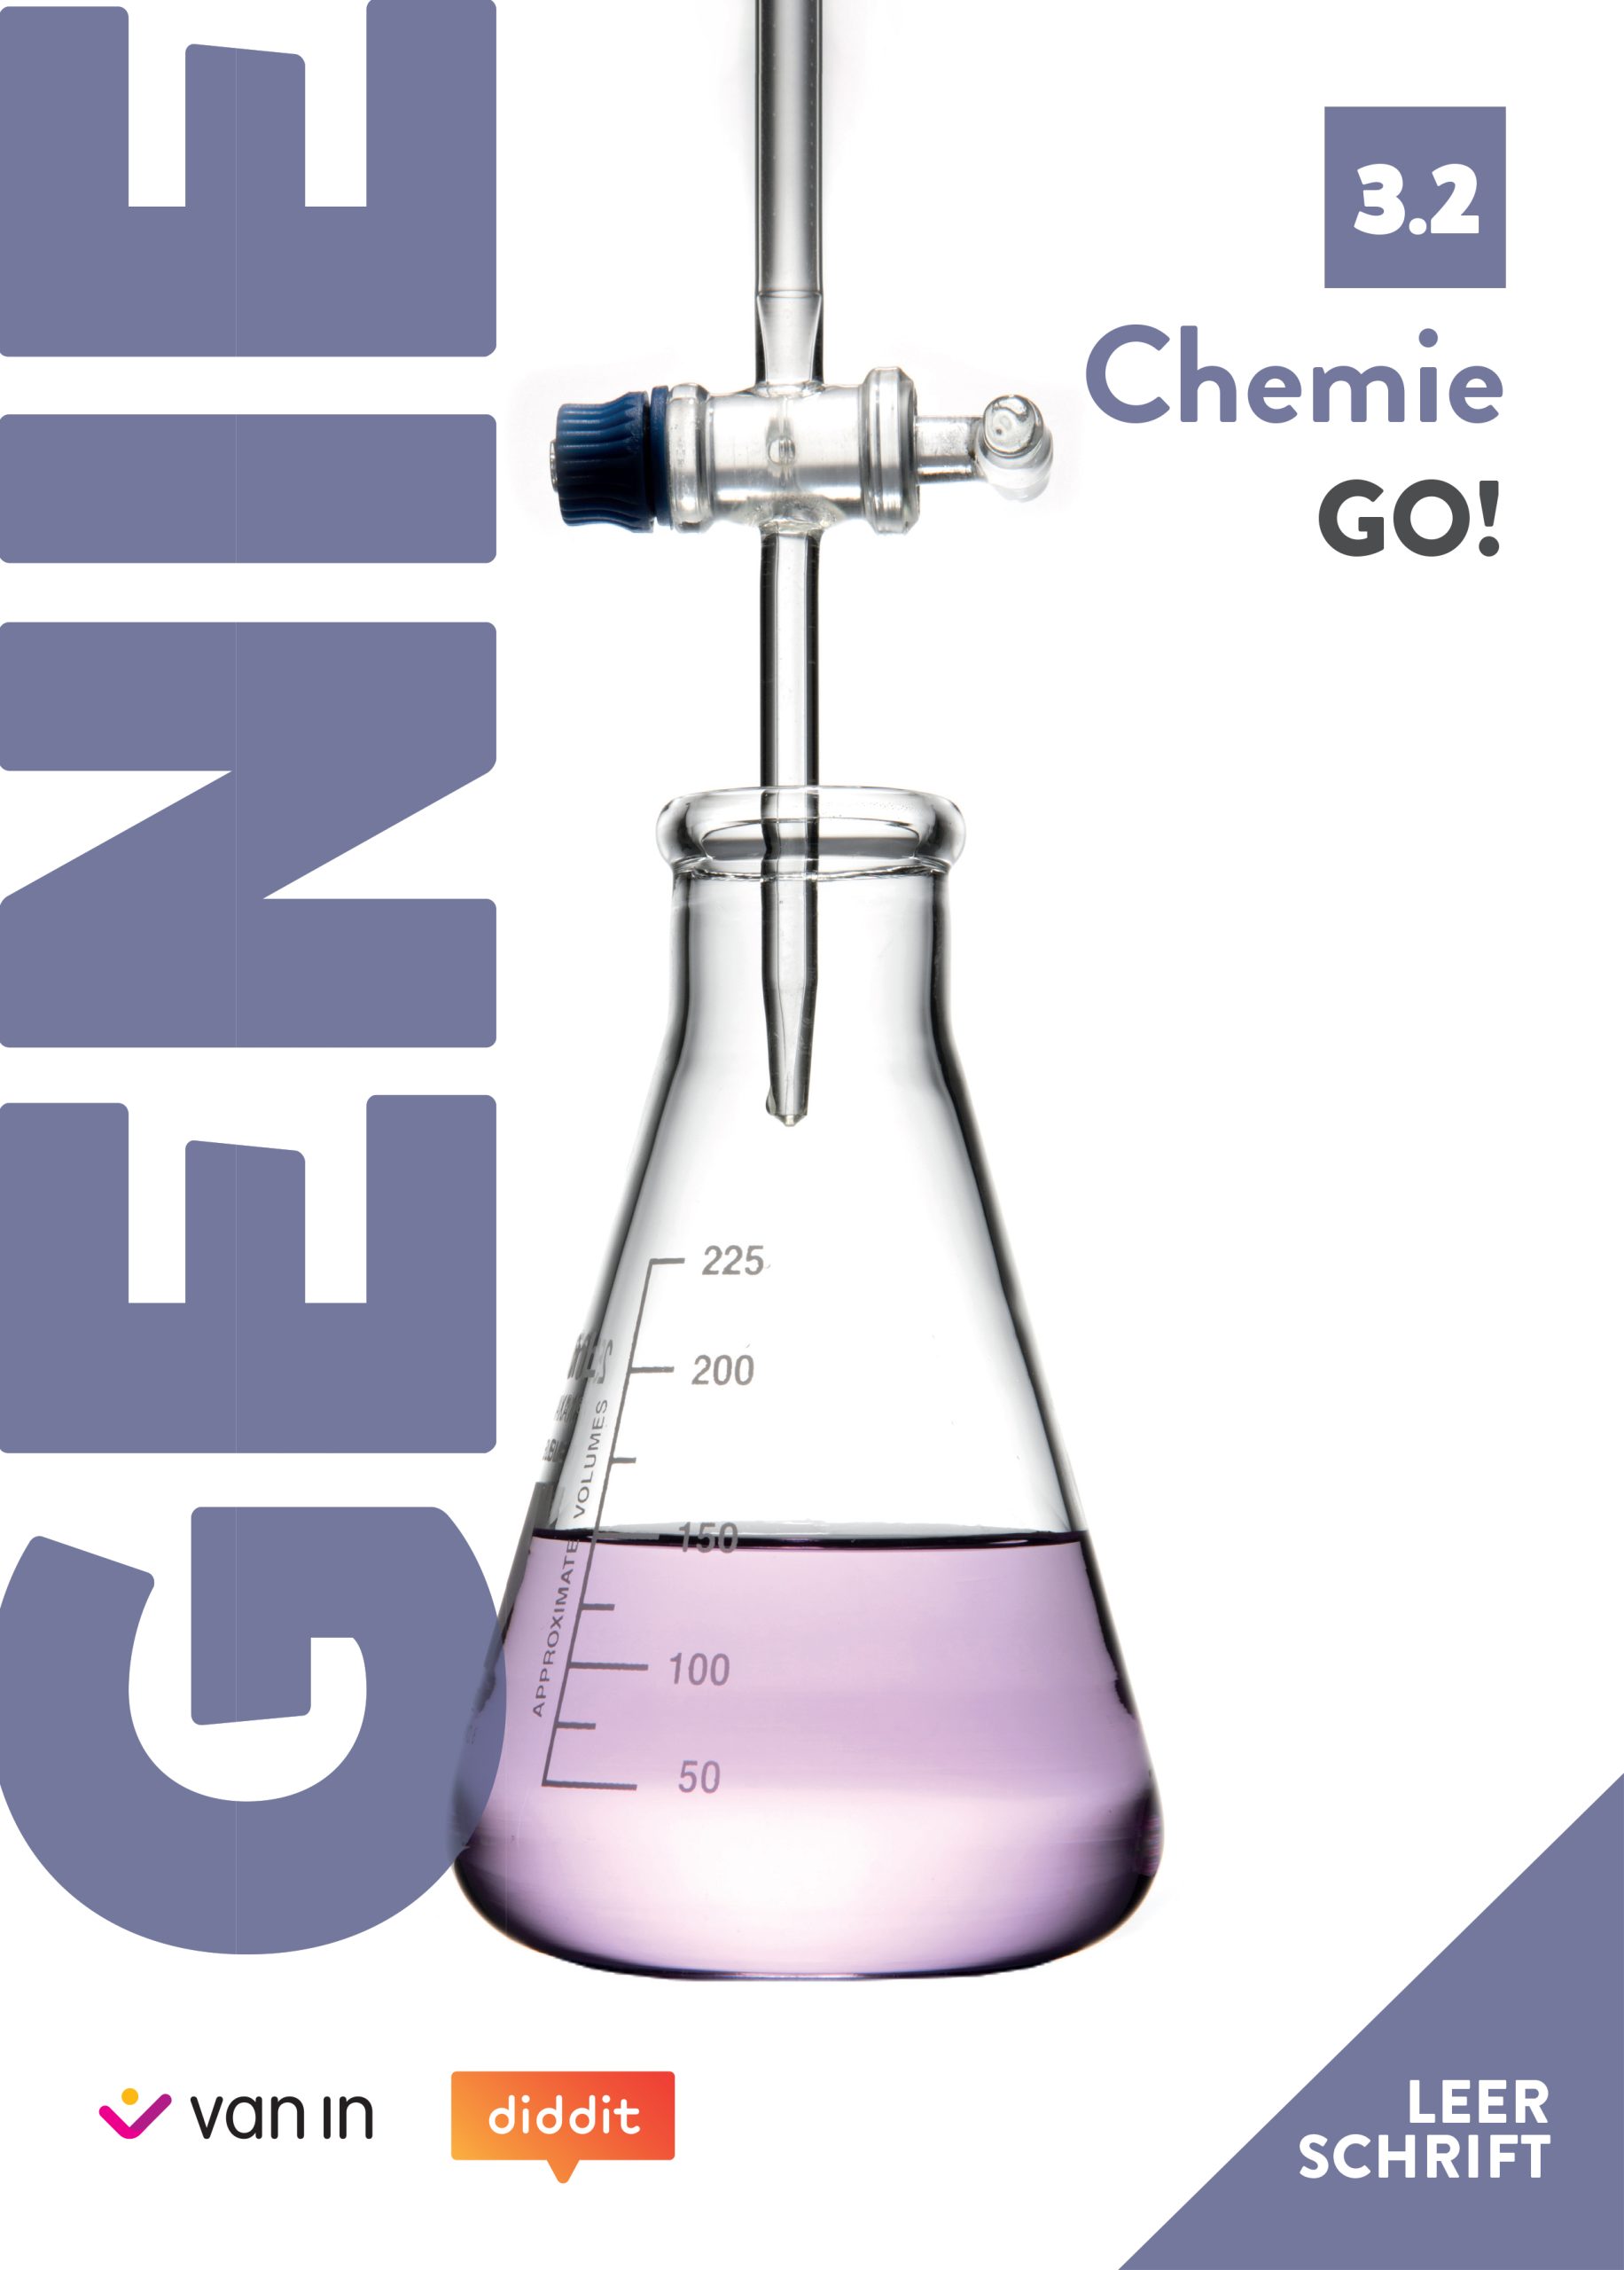 Leerschrift GENIE Chemie GO! 3.2